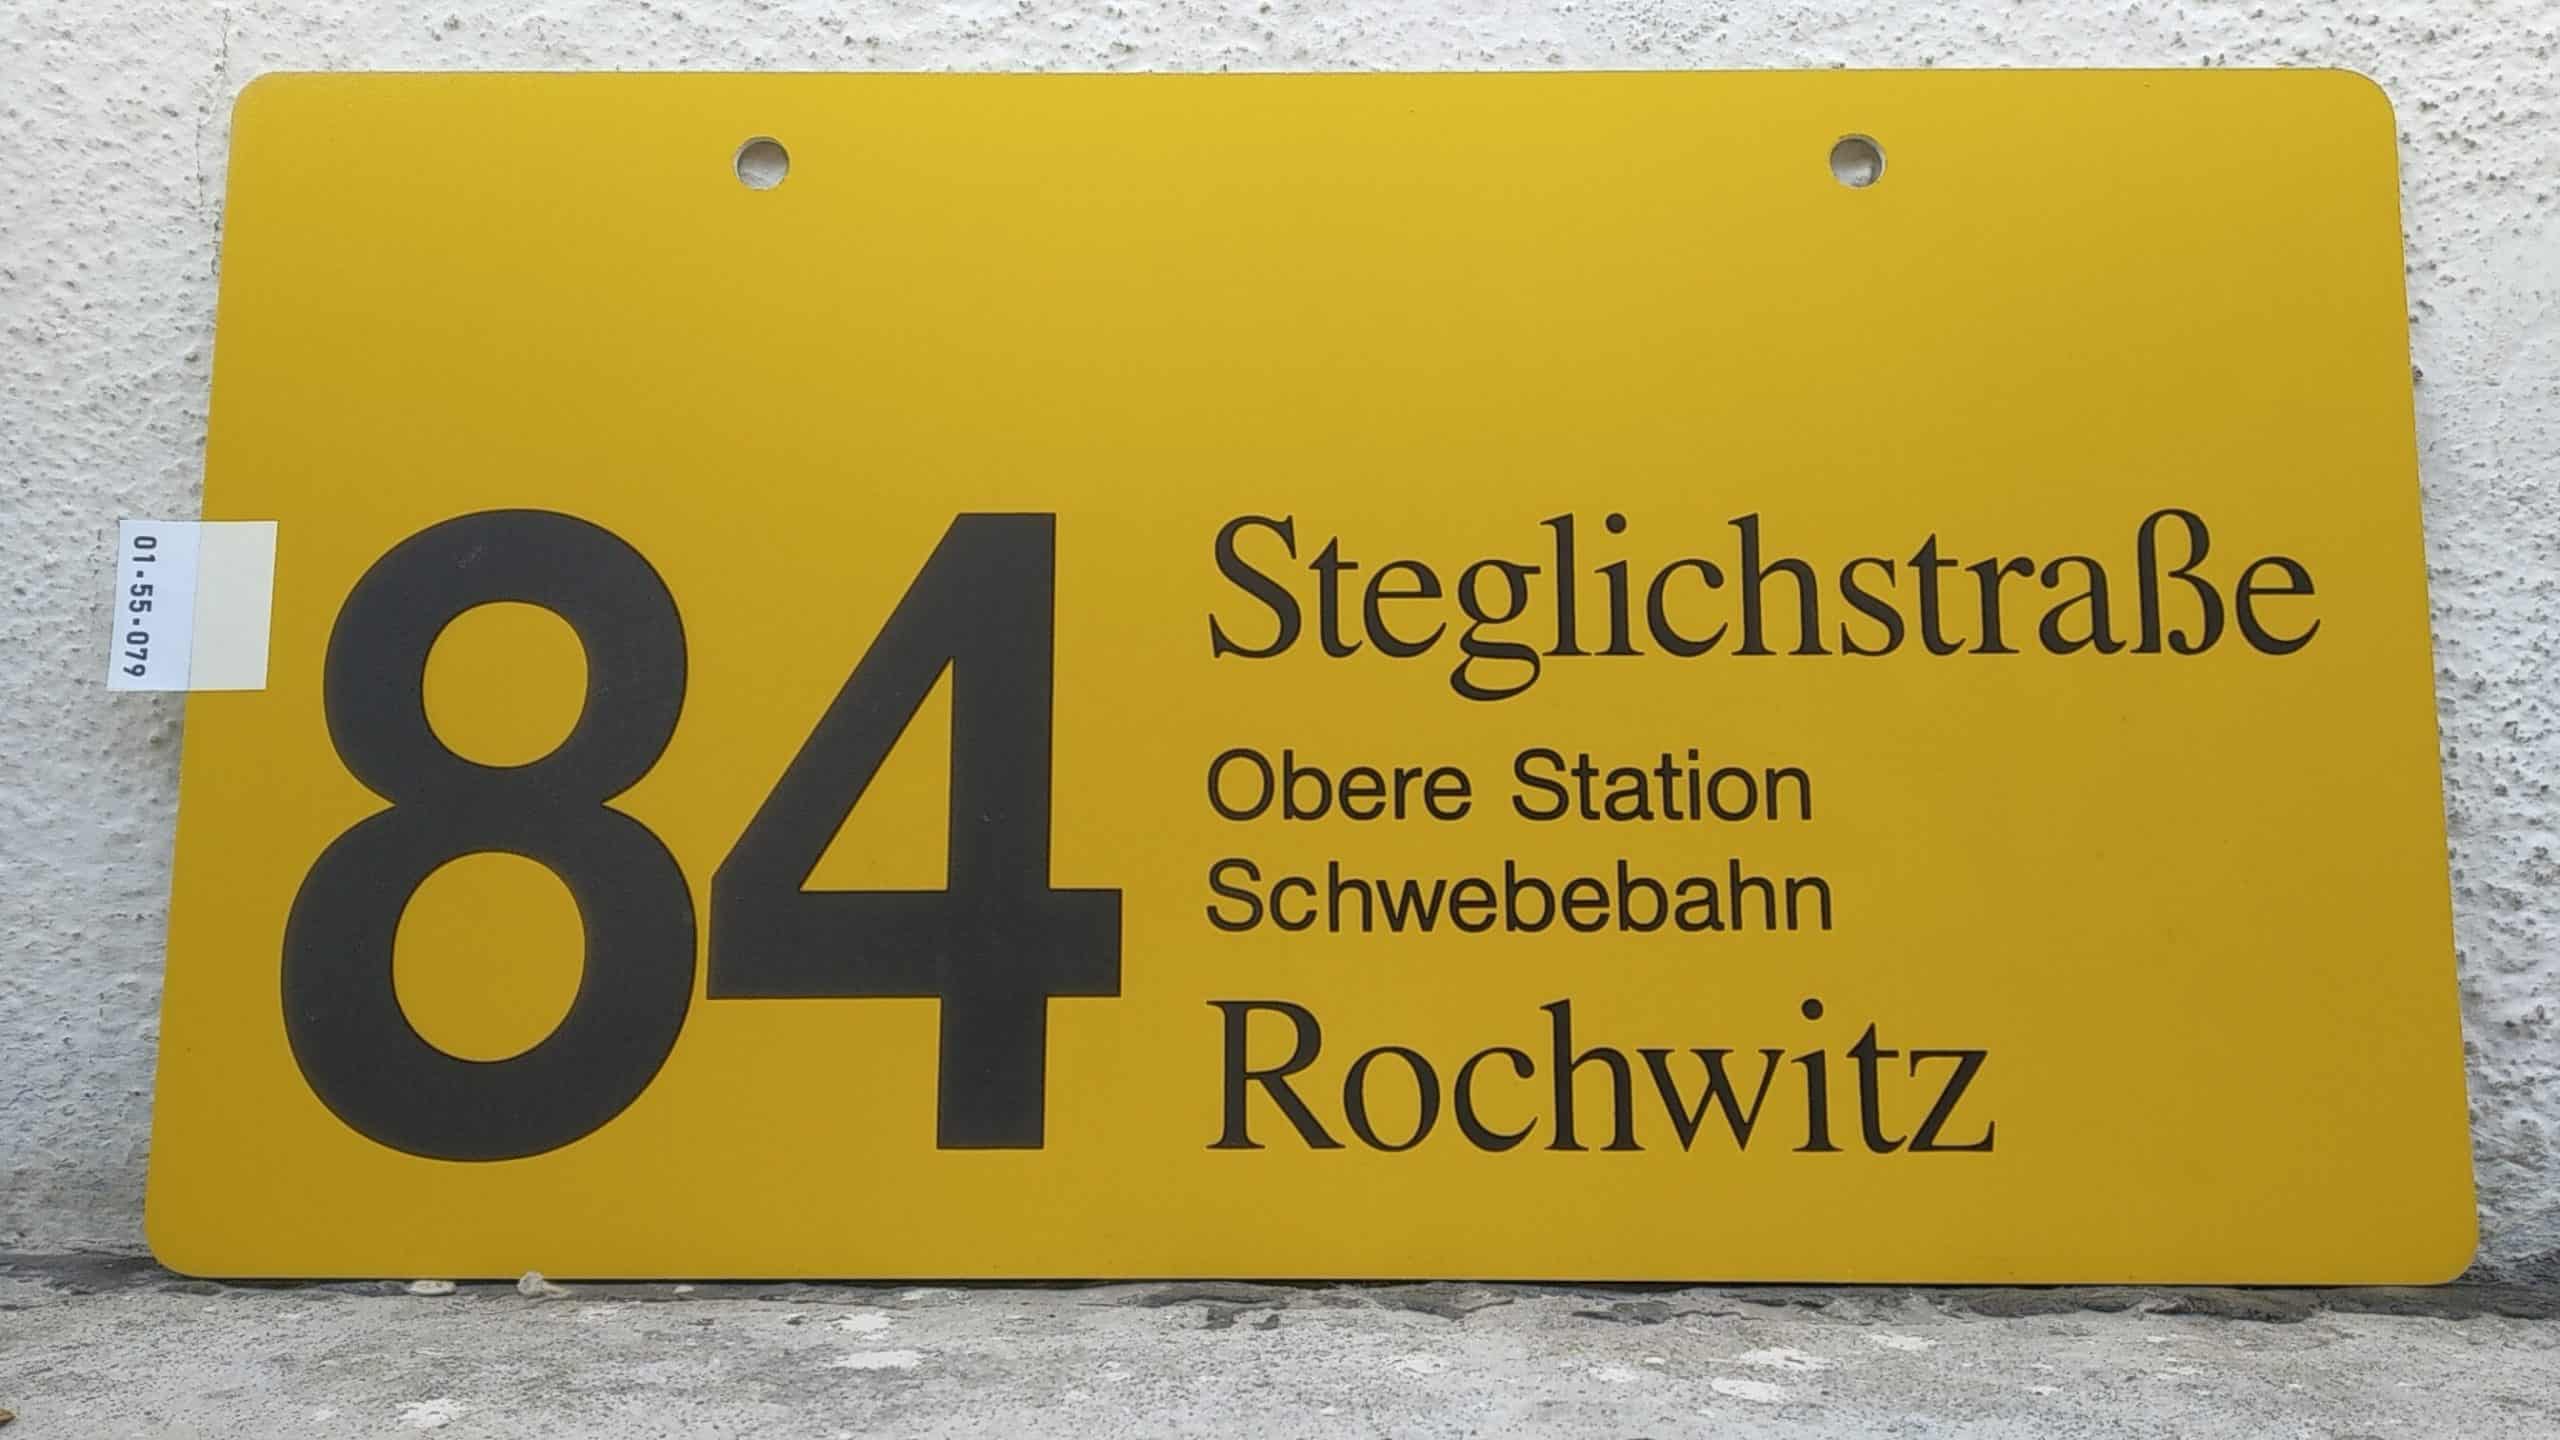 Ein seltenes Bus-Linienschild aus Dresden der Linie 84 von Steglichstraße nach Rochwitz #1